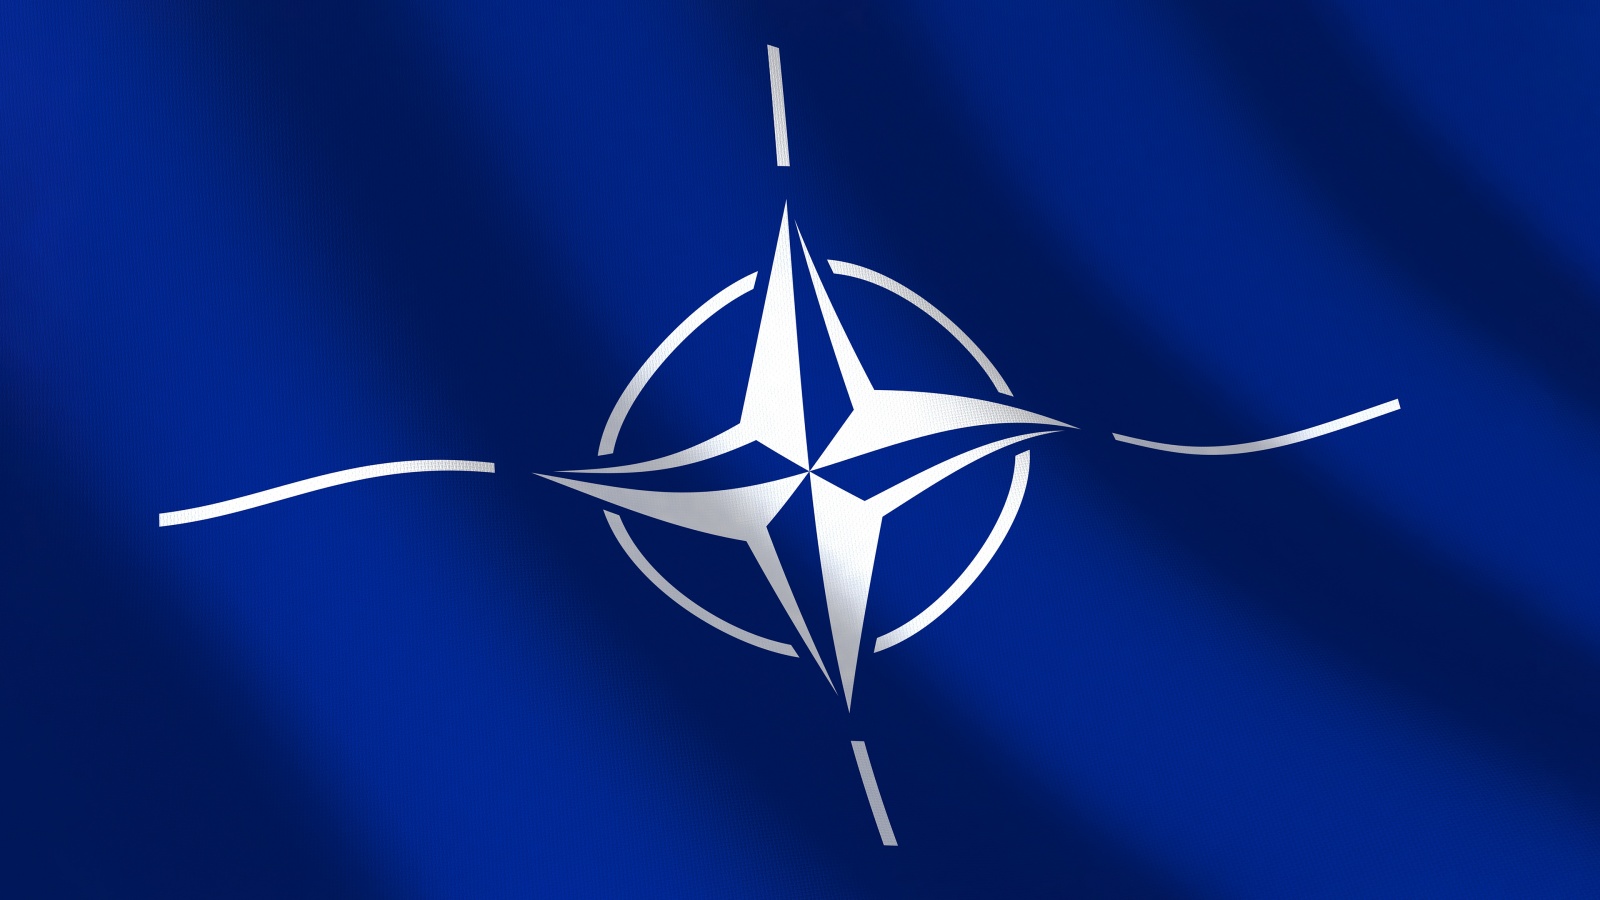 NATO ökade antalet flygpatruller europeiska allierade länder